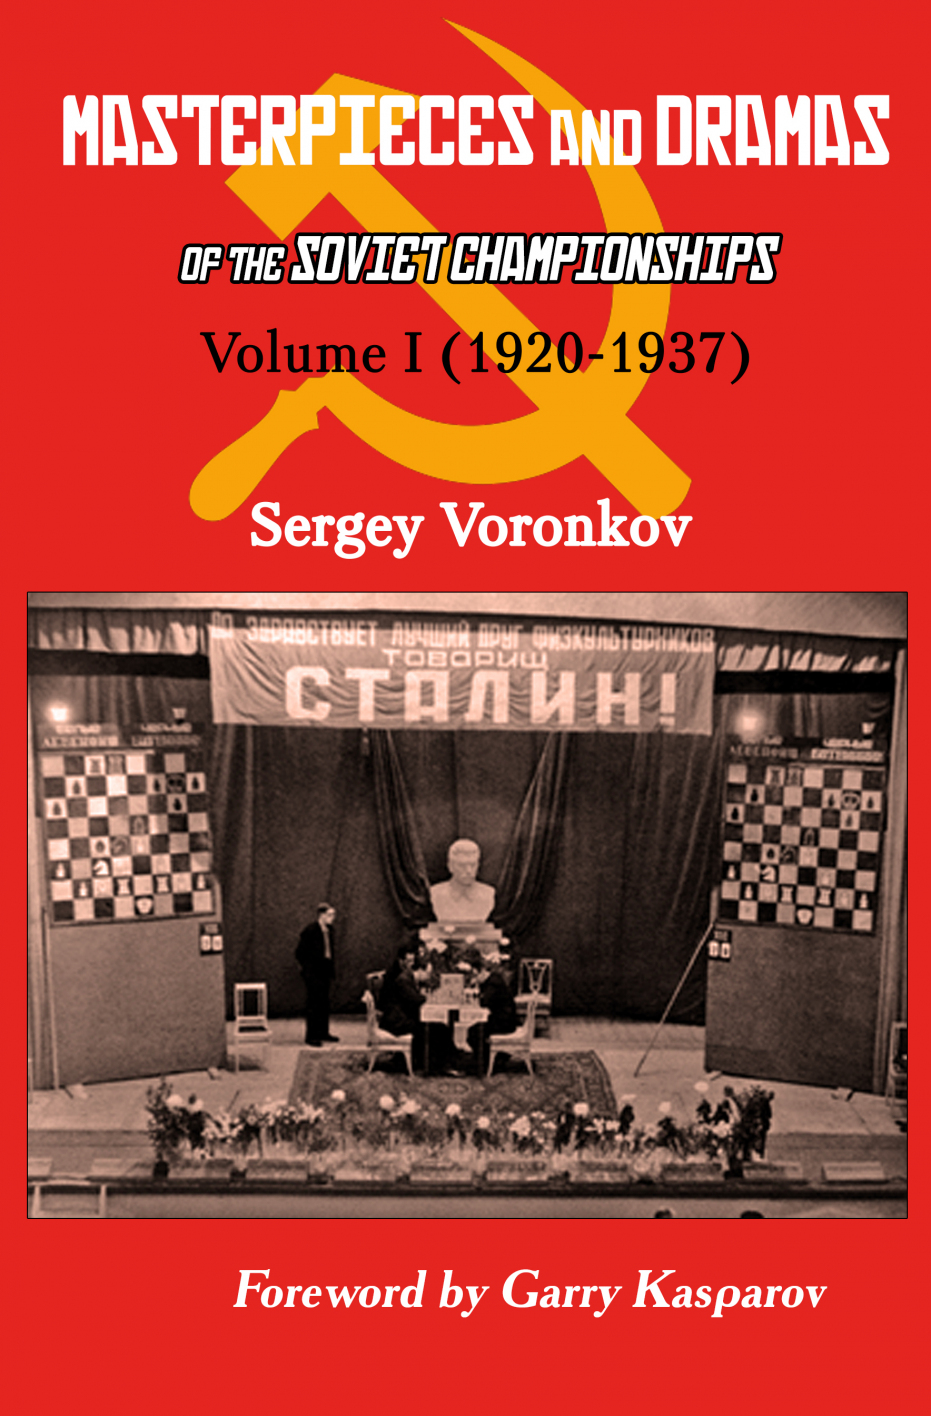 Russian Chess Kid Meme HQ (Misha vs Anatoly Karpov) 